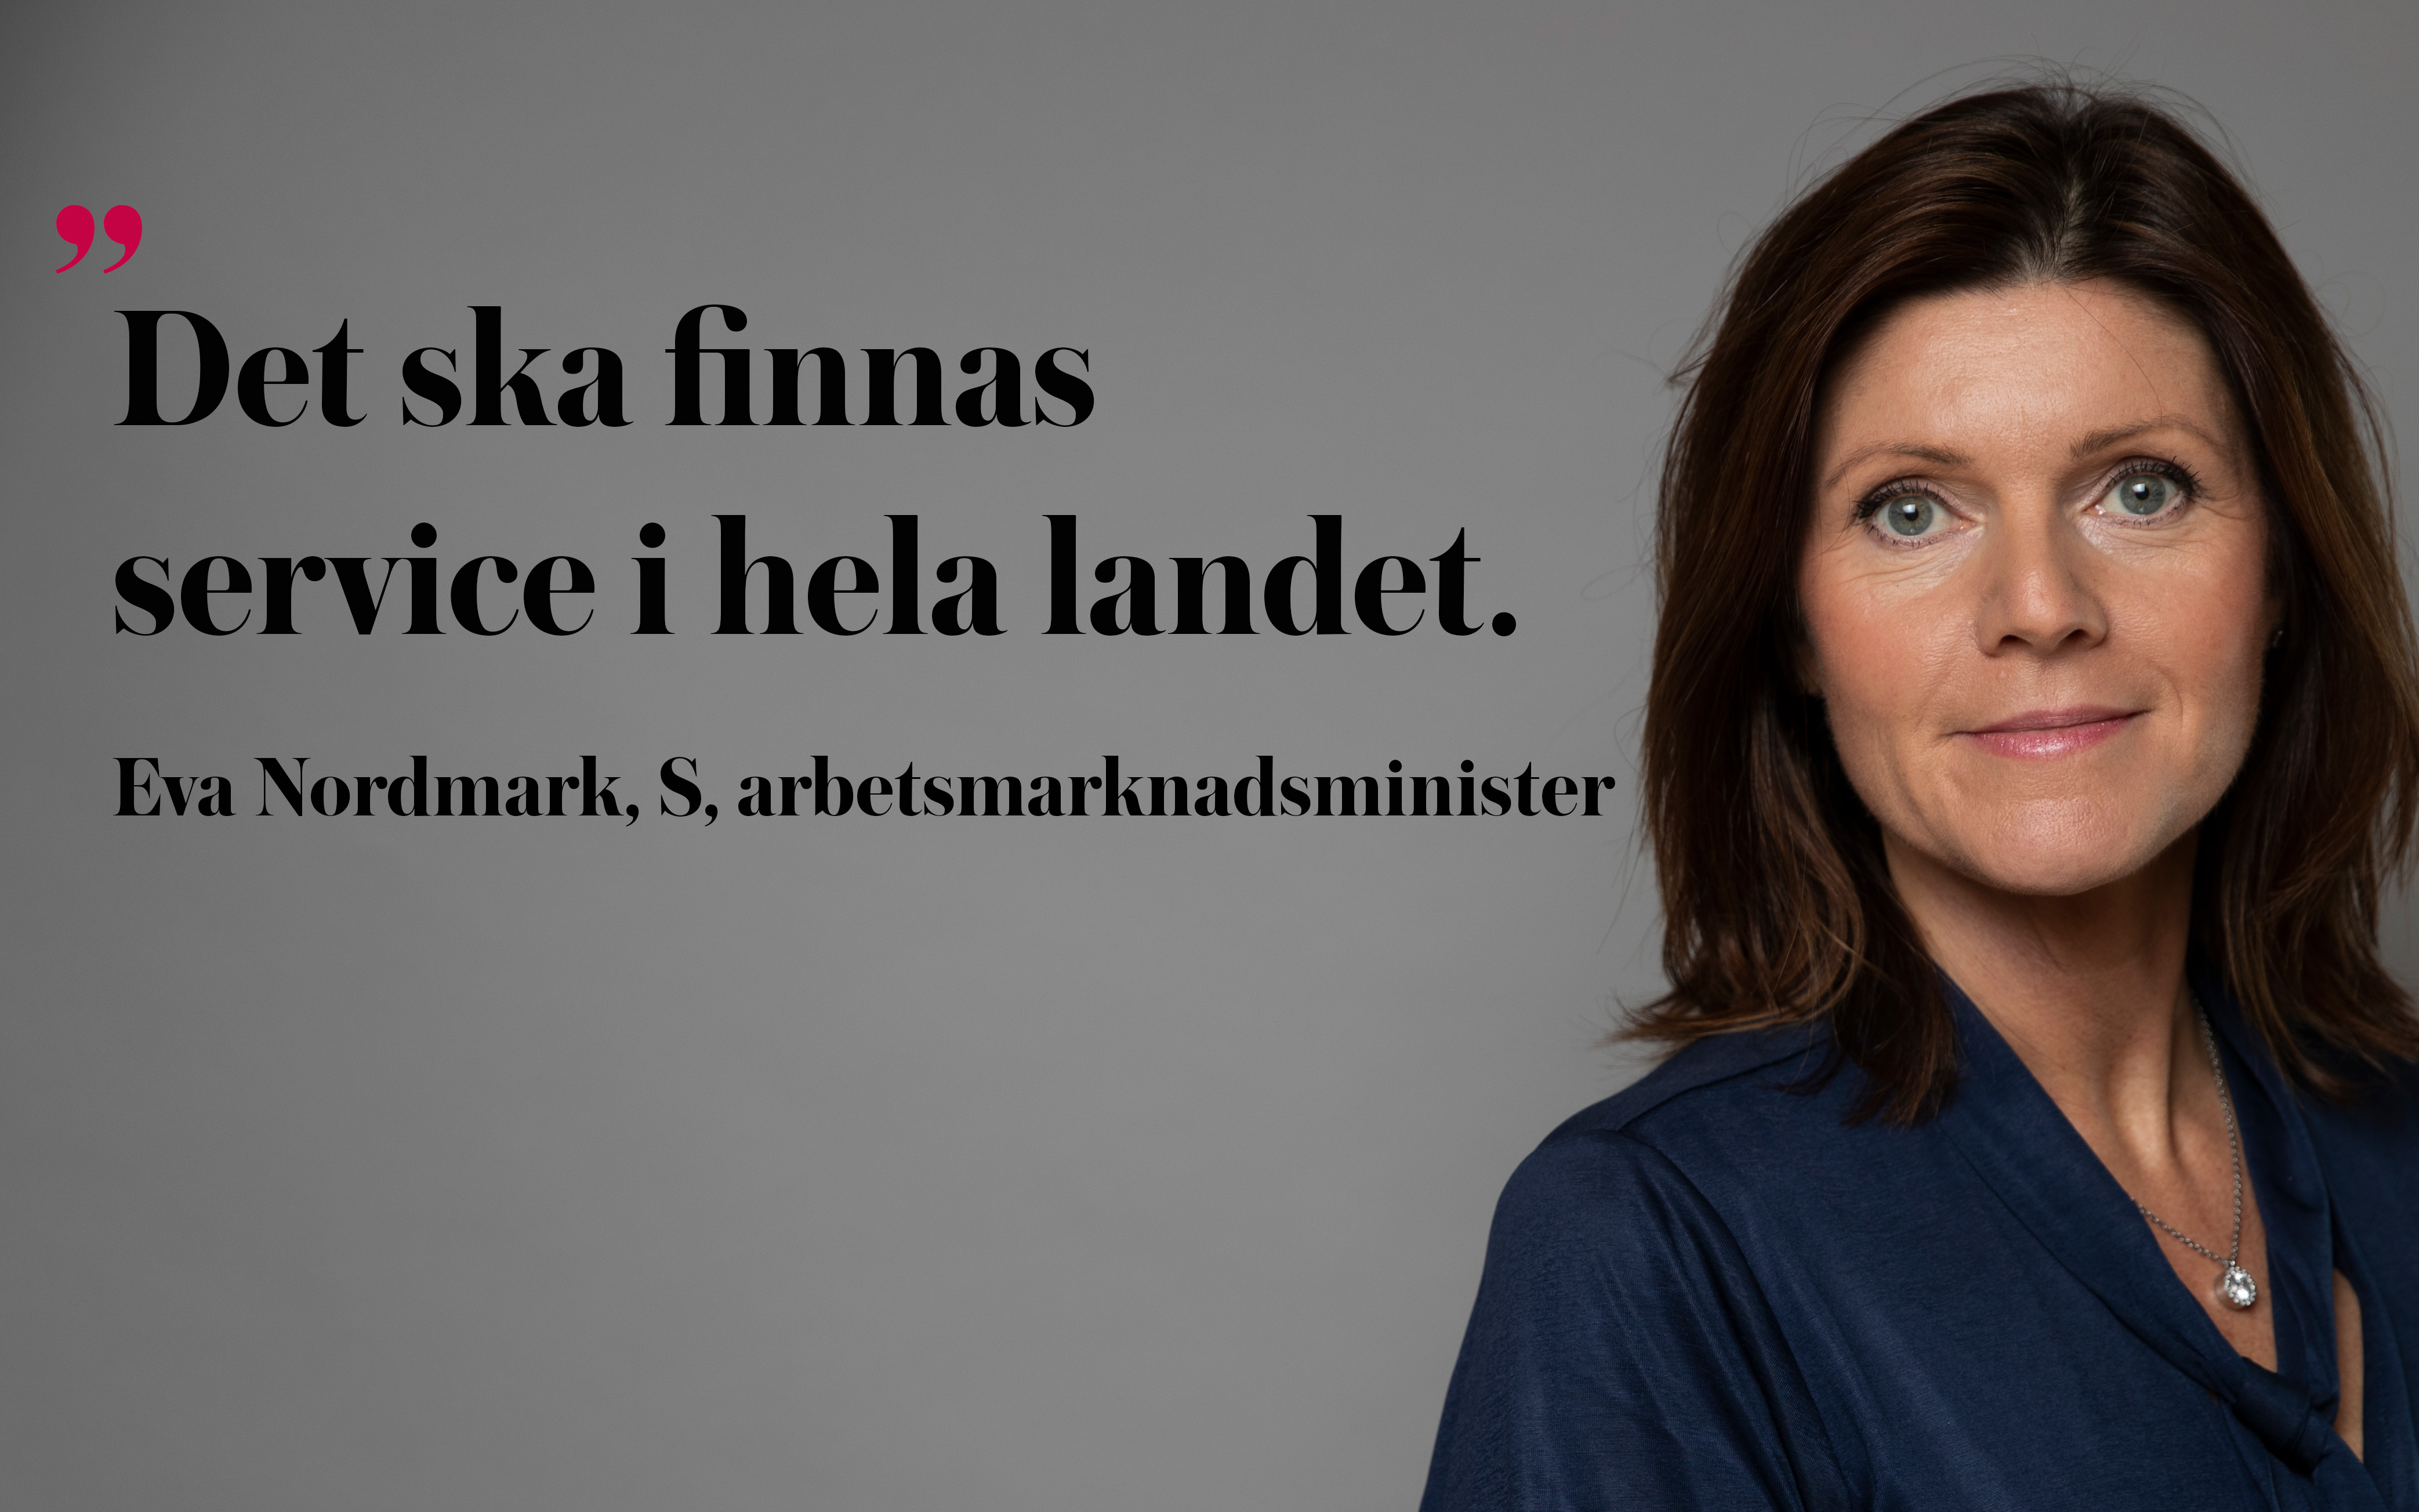 Eva Nordmark, S, är ny arbetsmarknadsminister sedan i måndags.